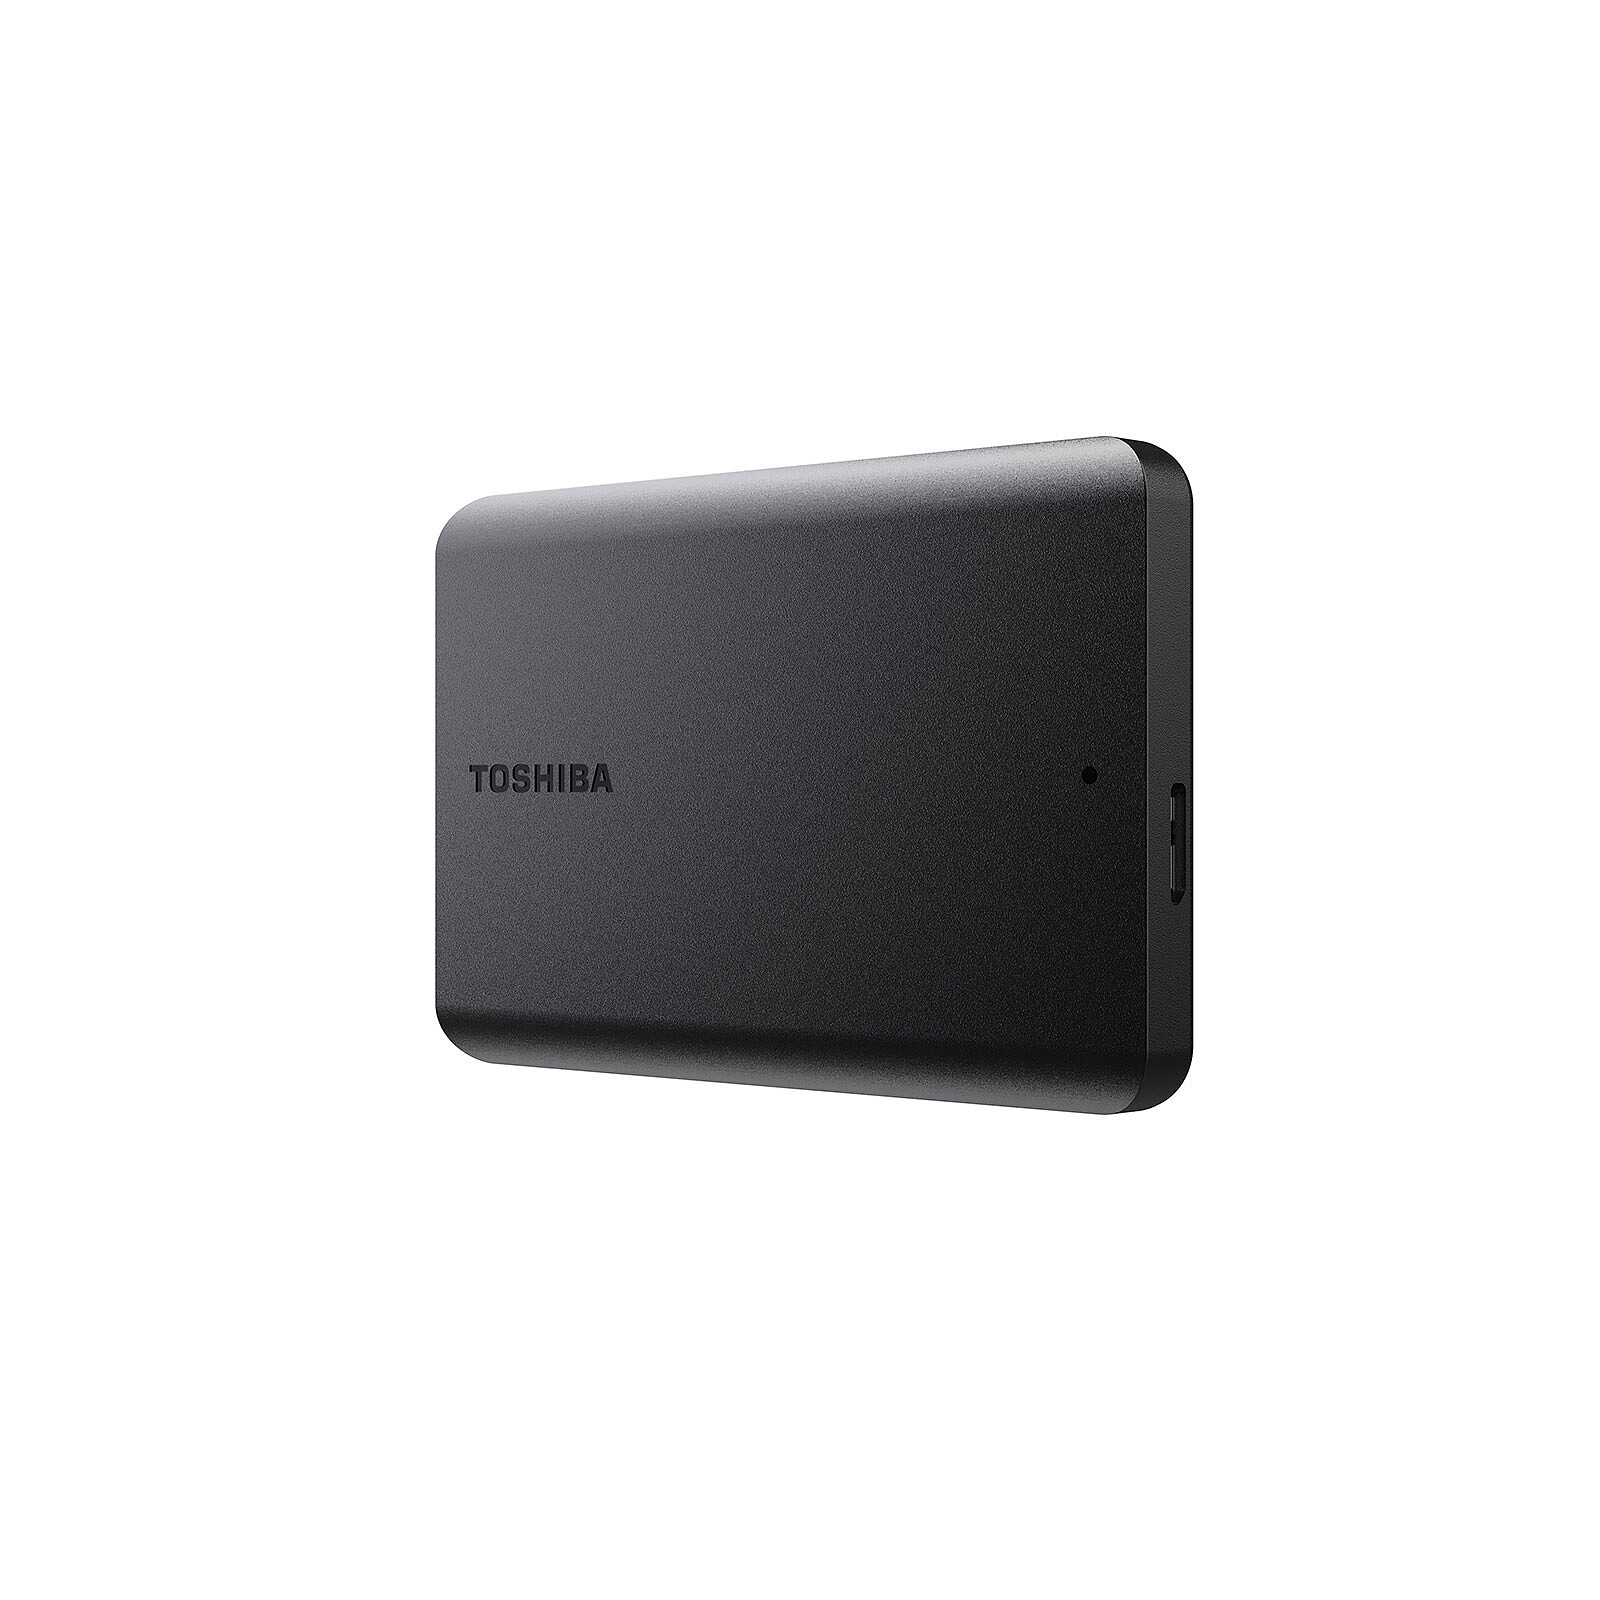 Toshiba Canvio Basics 500 Go Noir - Disque dur externe - Garantie 3 ans LDLC